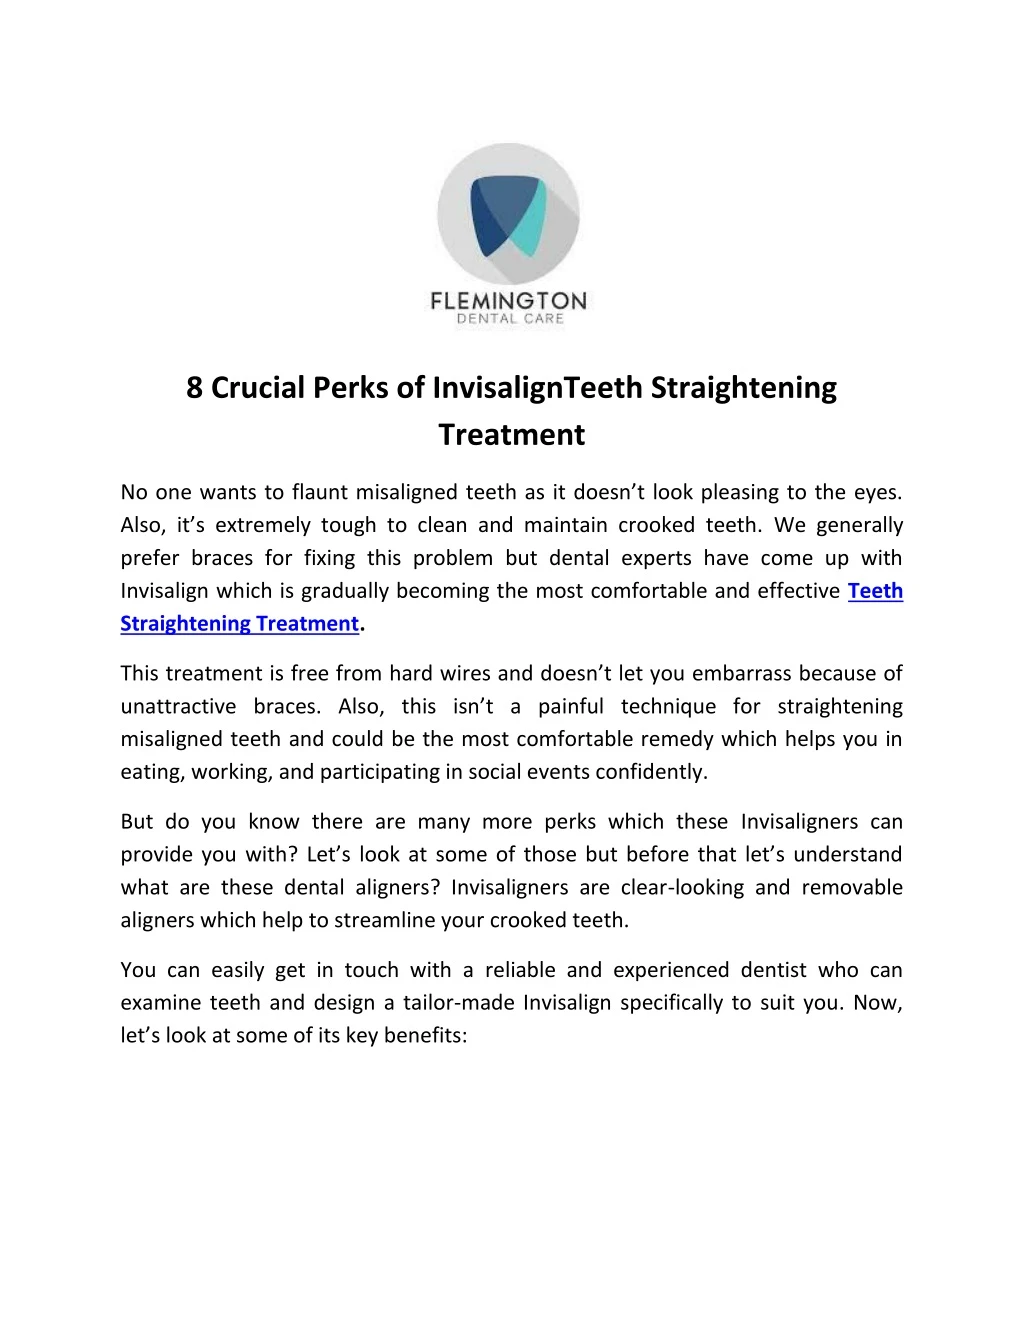 8 crucial perks of invisalignteeth straightening